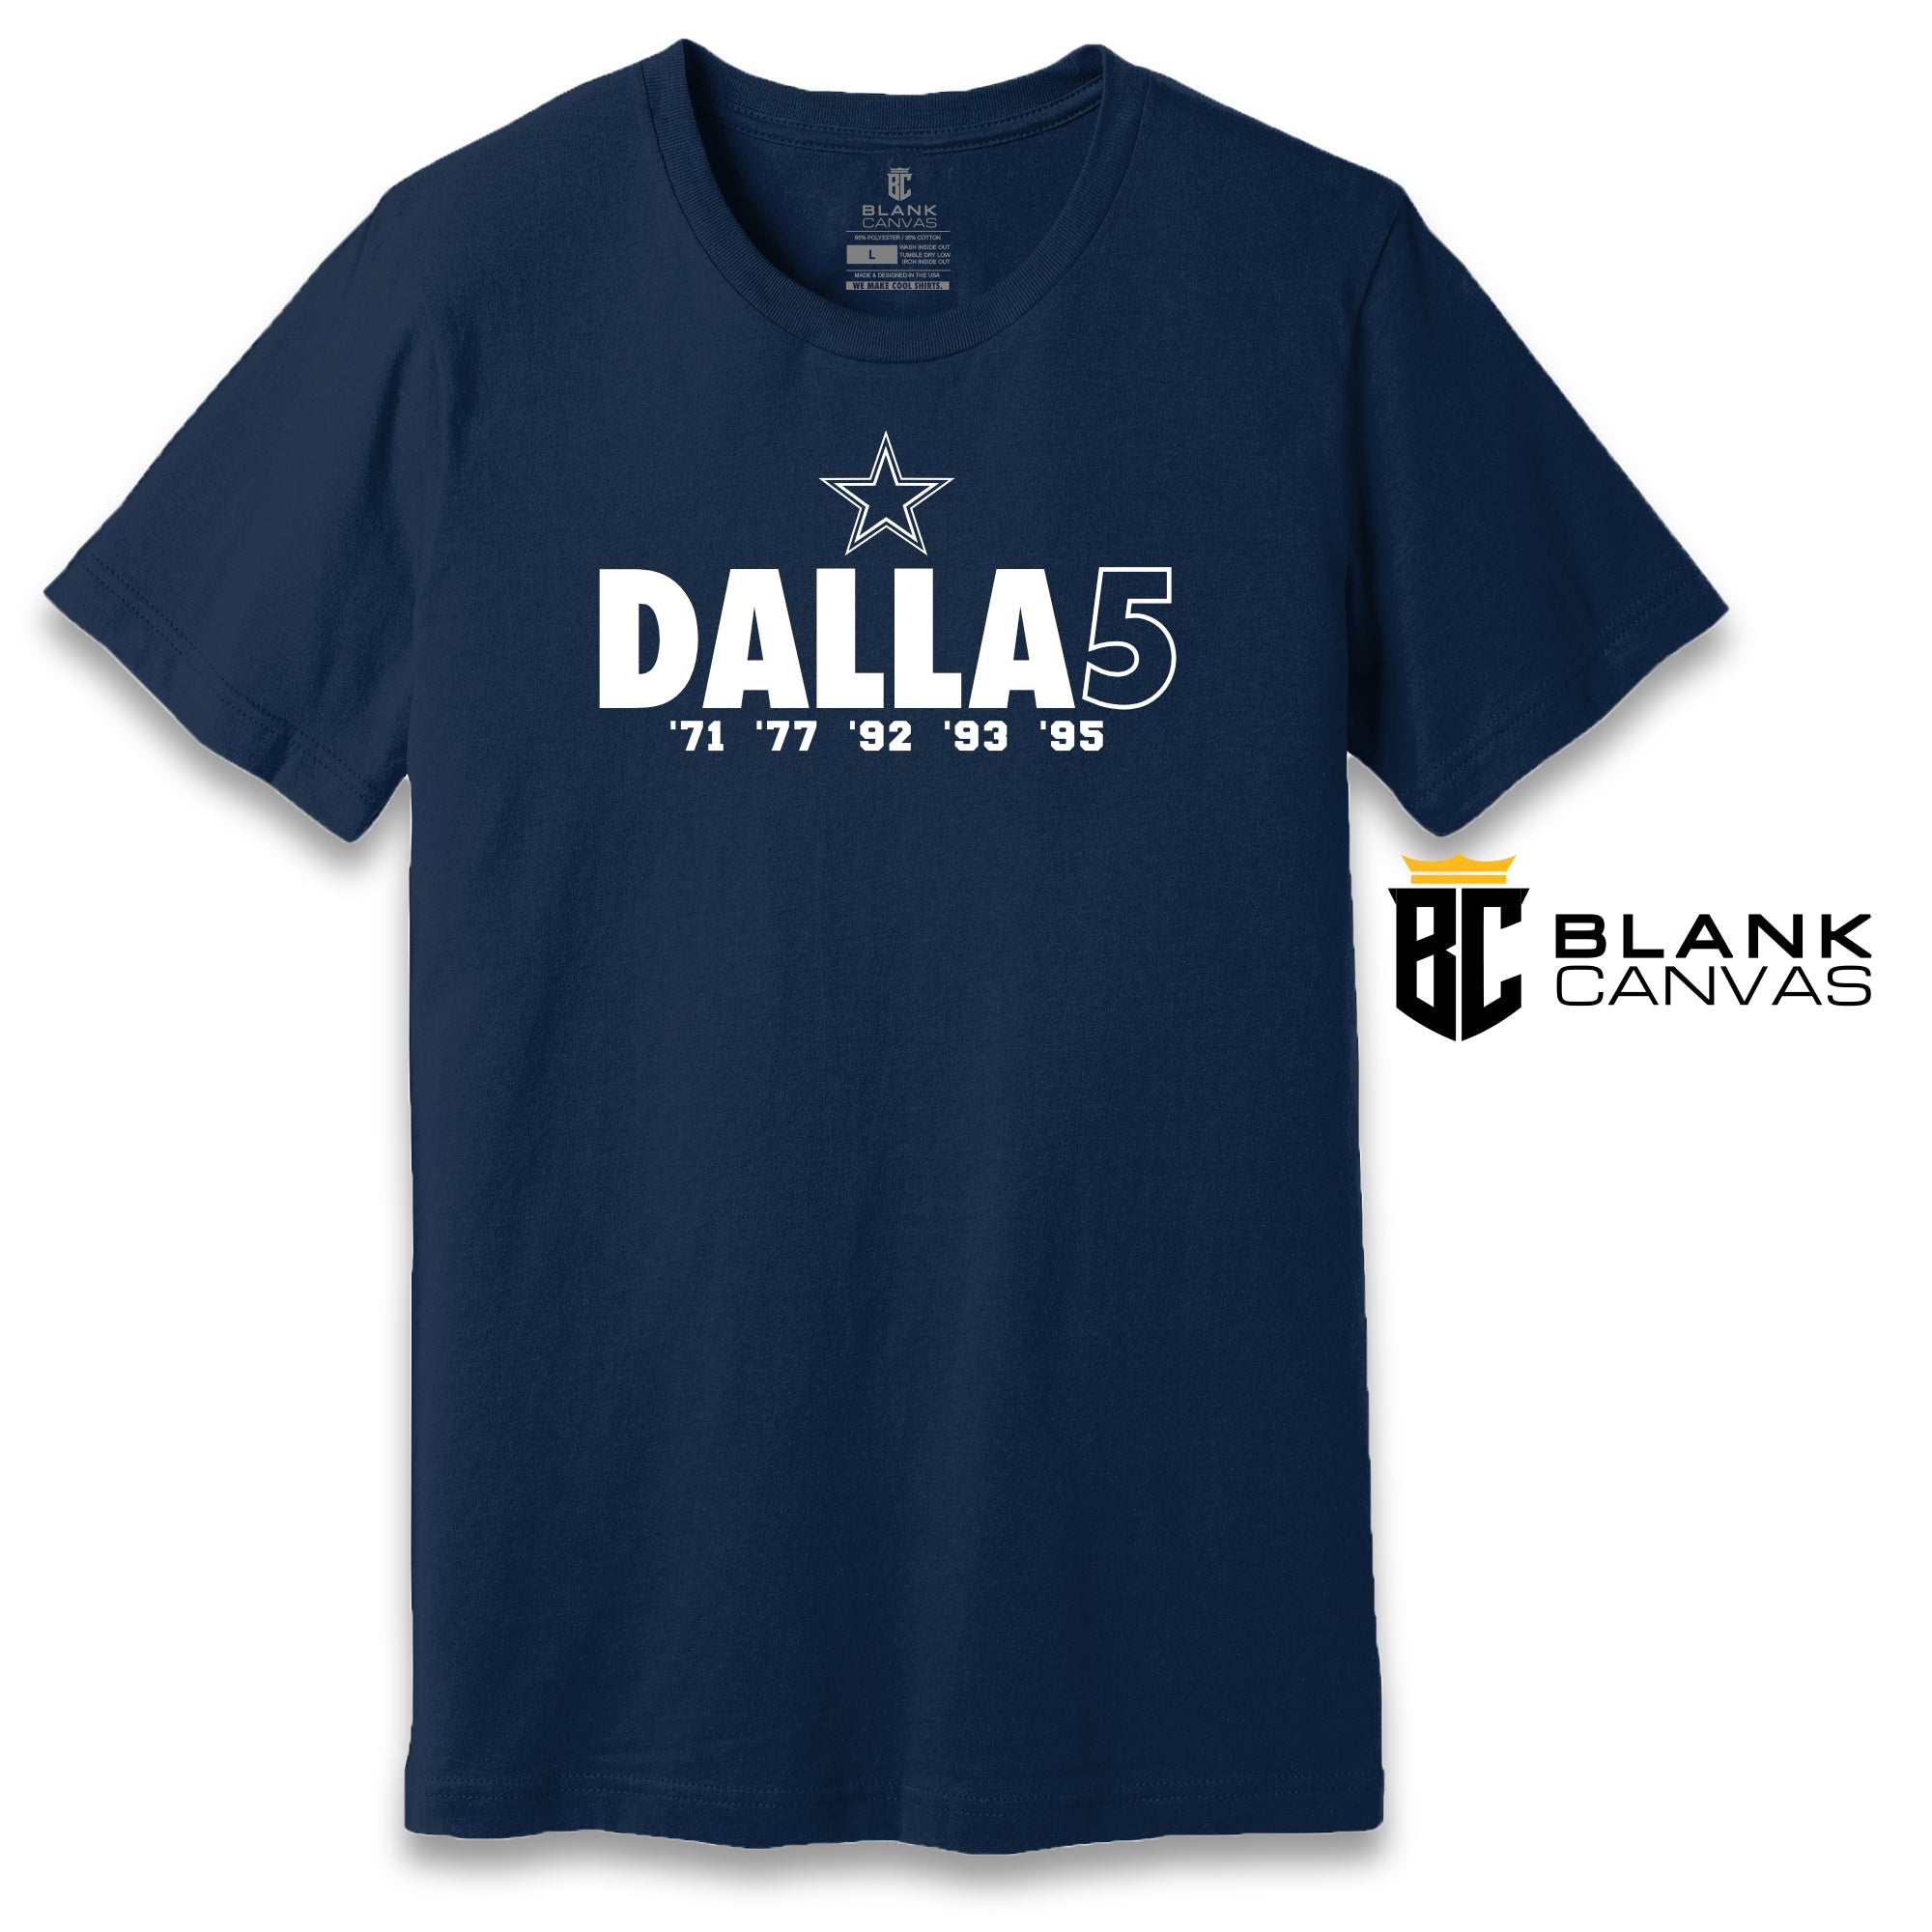 Dallas 5x Champions T-Shirt